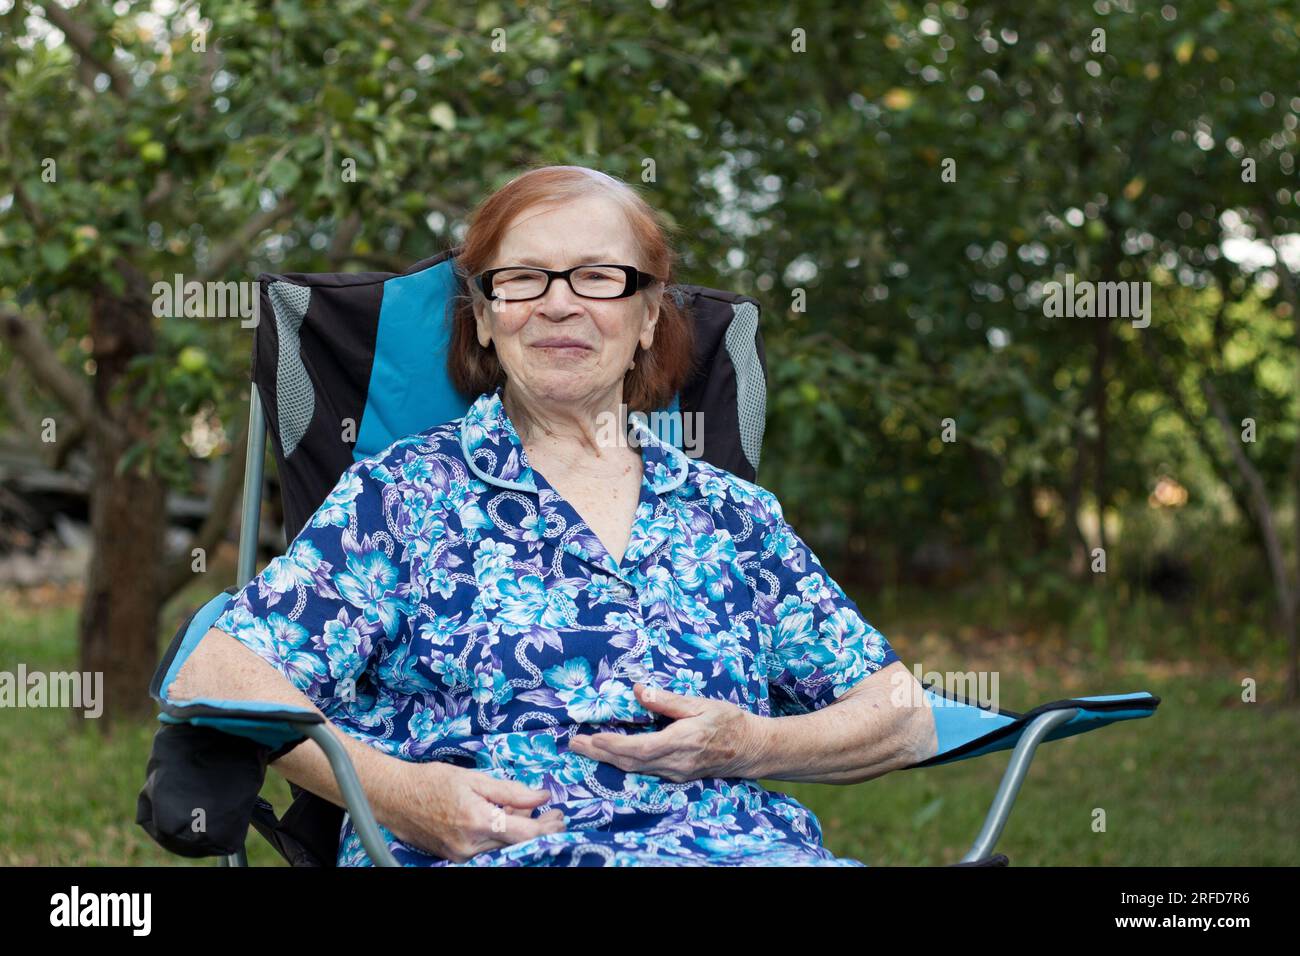 Ritratto della nonna anziana sorridente in giardino a casa. l'anziana si sta riposando seduto sulla sedia, guardando la macchina fotografica, il frutteto sullo sfondo. Somma Foto Stock